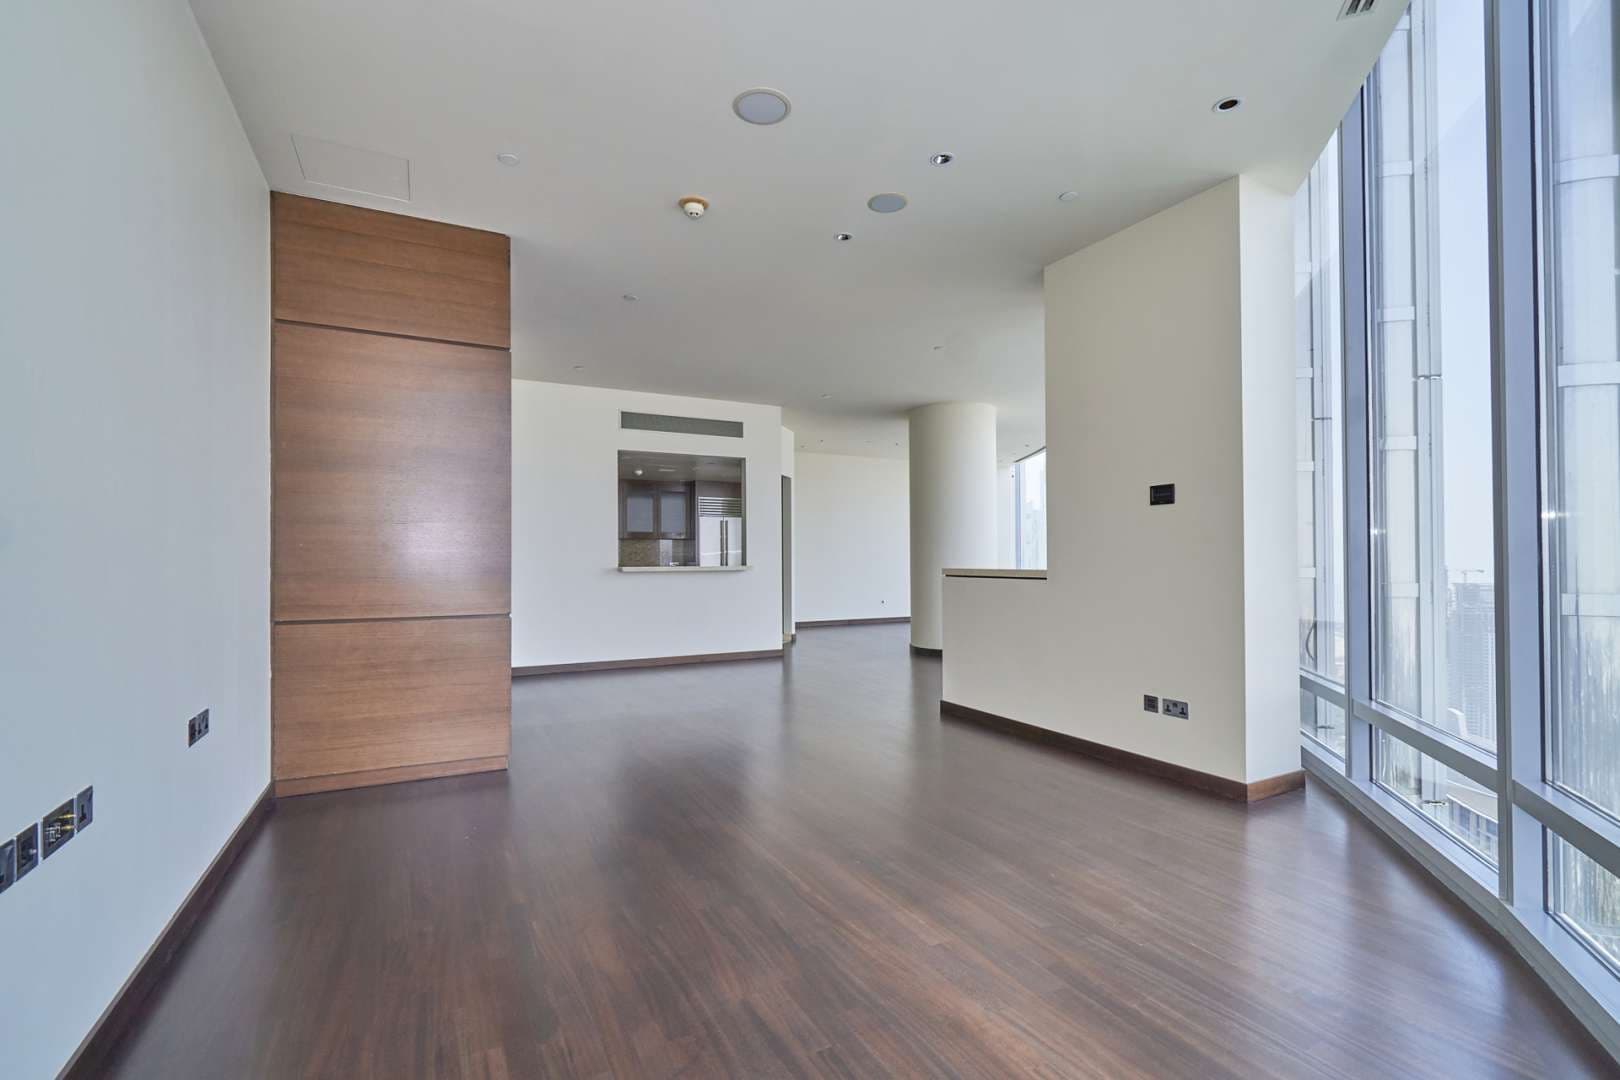 2 Bedroom Apartment For Rent Burj Khalifa Area Lp07443 1b01ef9061ca3e00.jpg